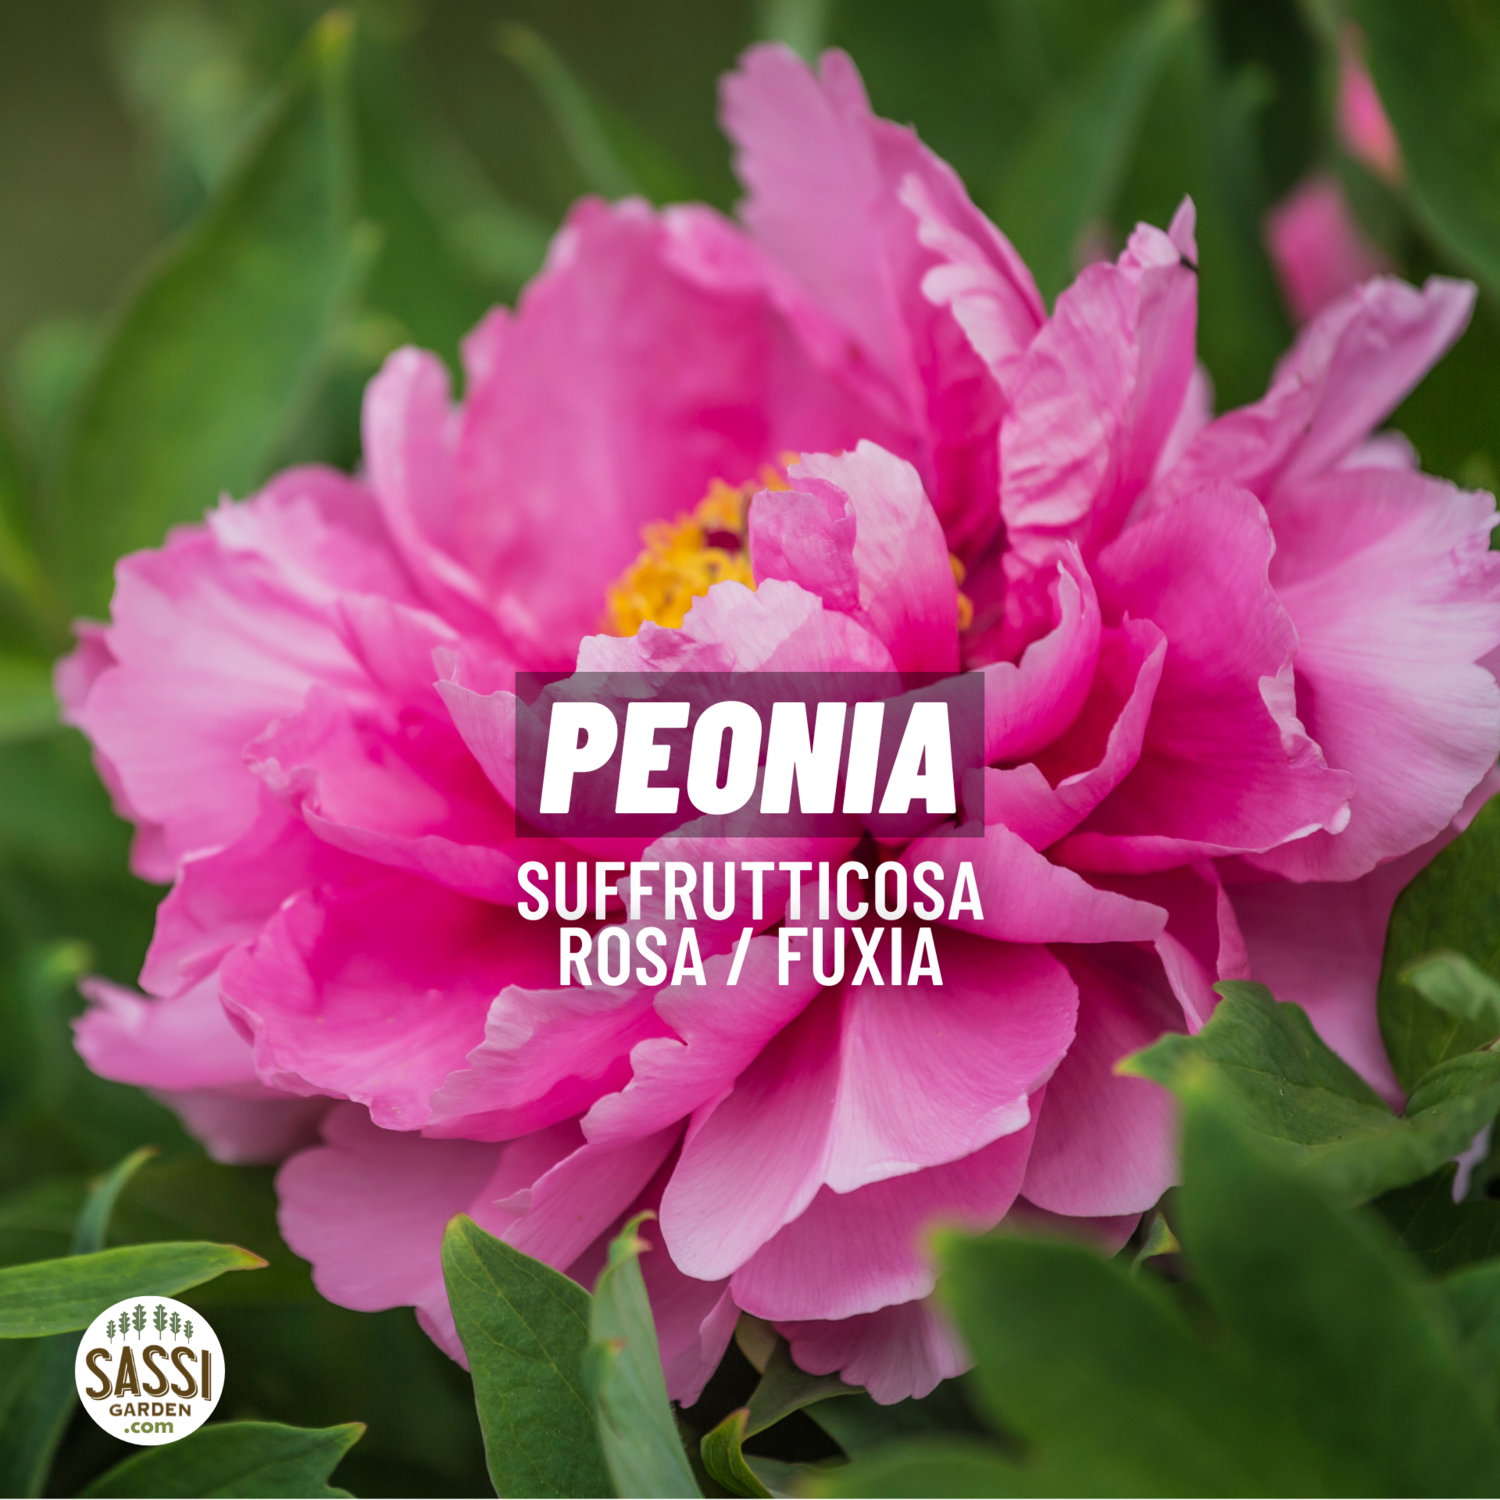 Peonia Paeonia Suffruticosa Arborea vaso 17 COLORE ROSA CARICO FUXIA